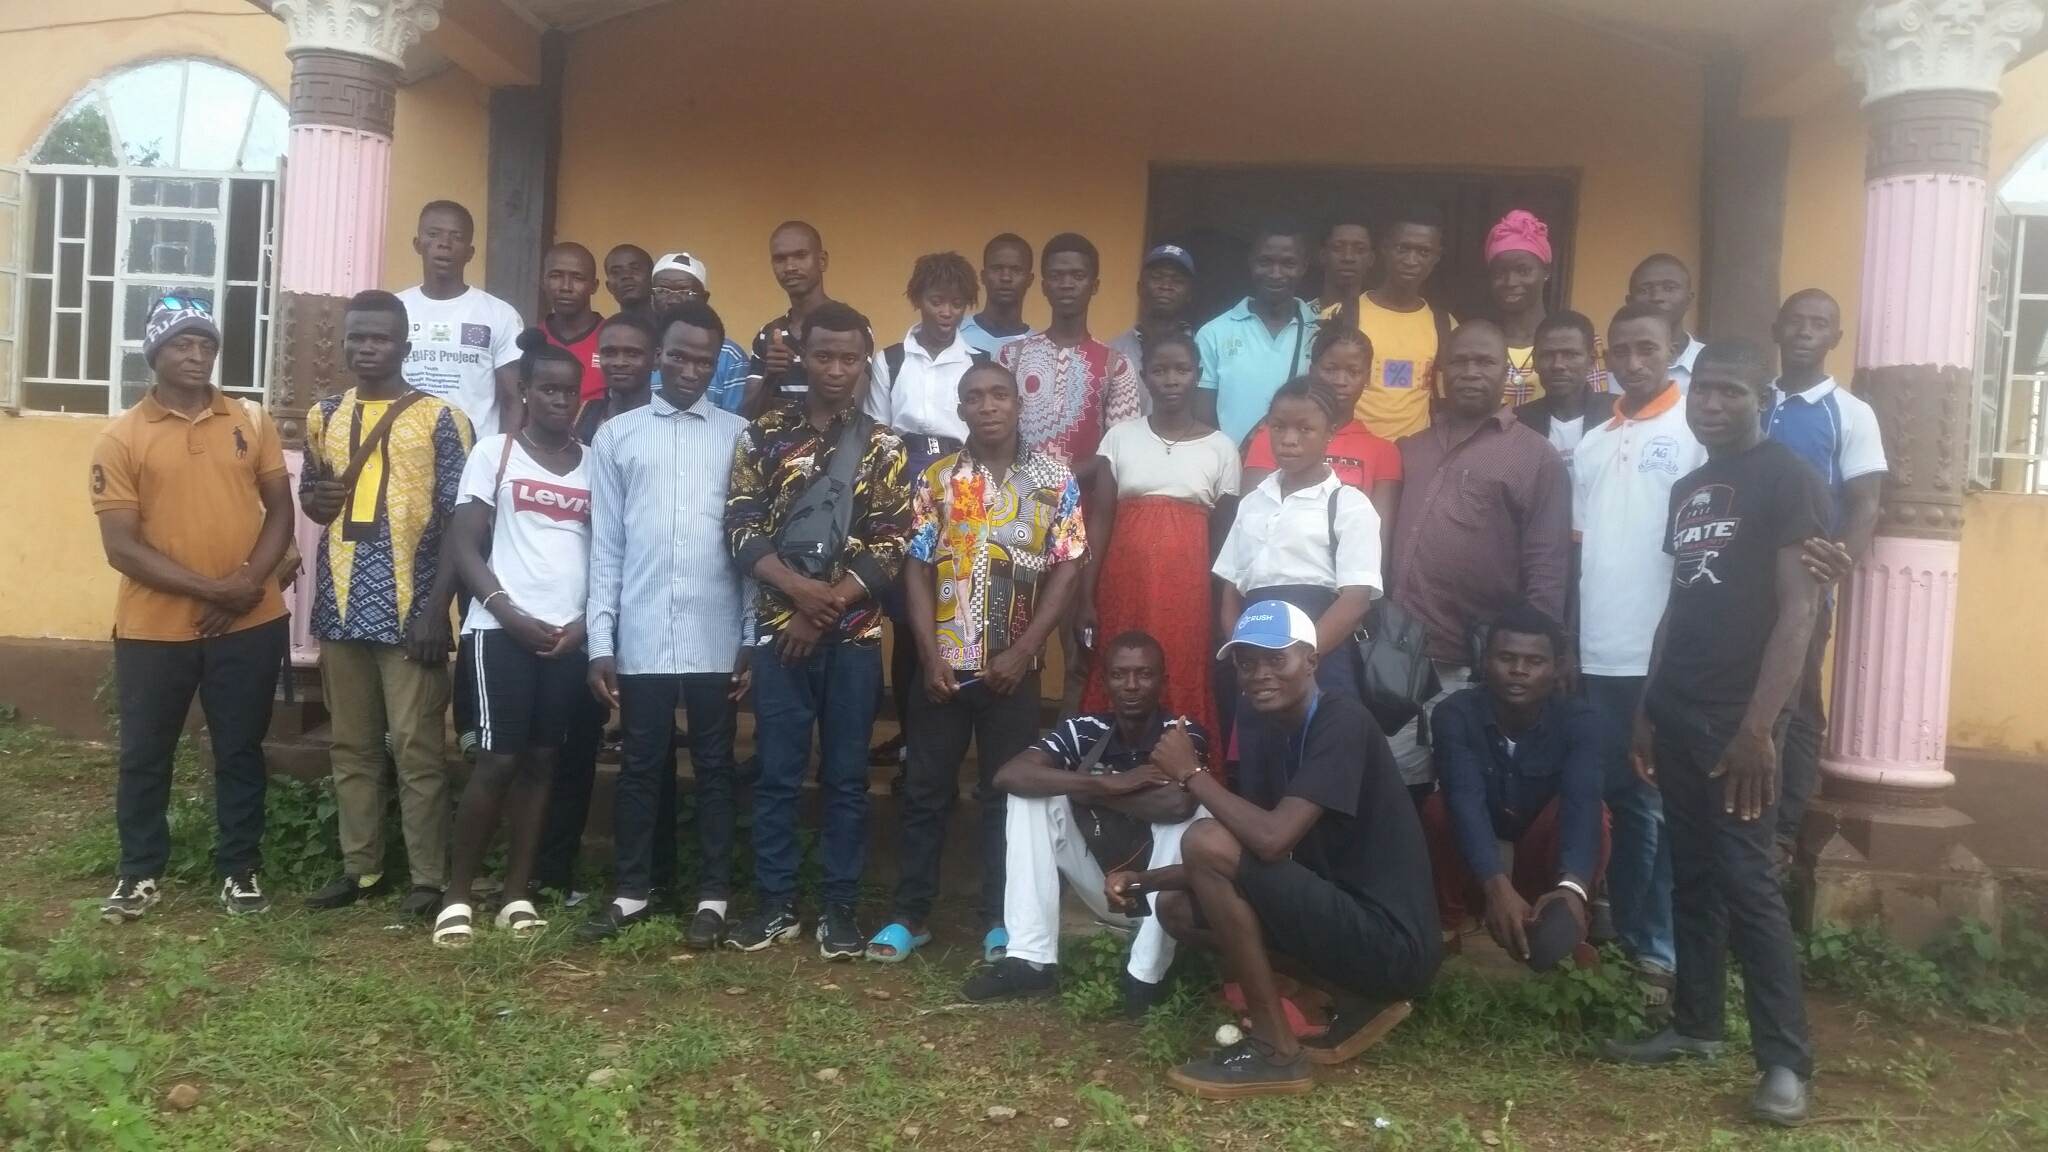 Featured image for “Ny fase i misjonsarbeidet i Sierra Leone”